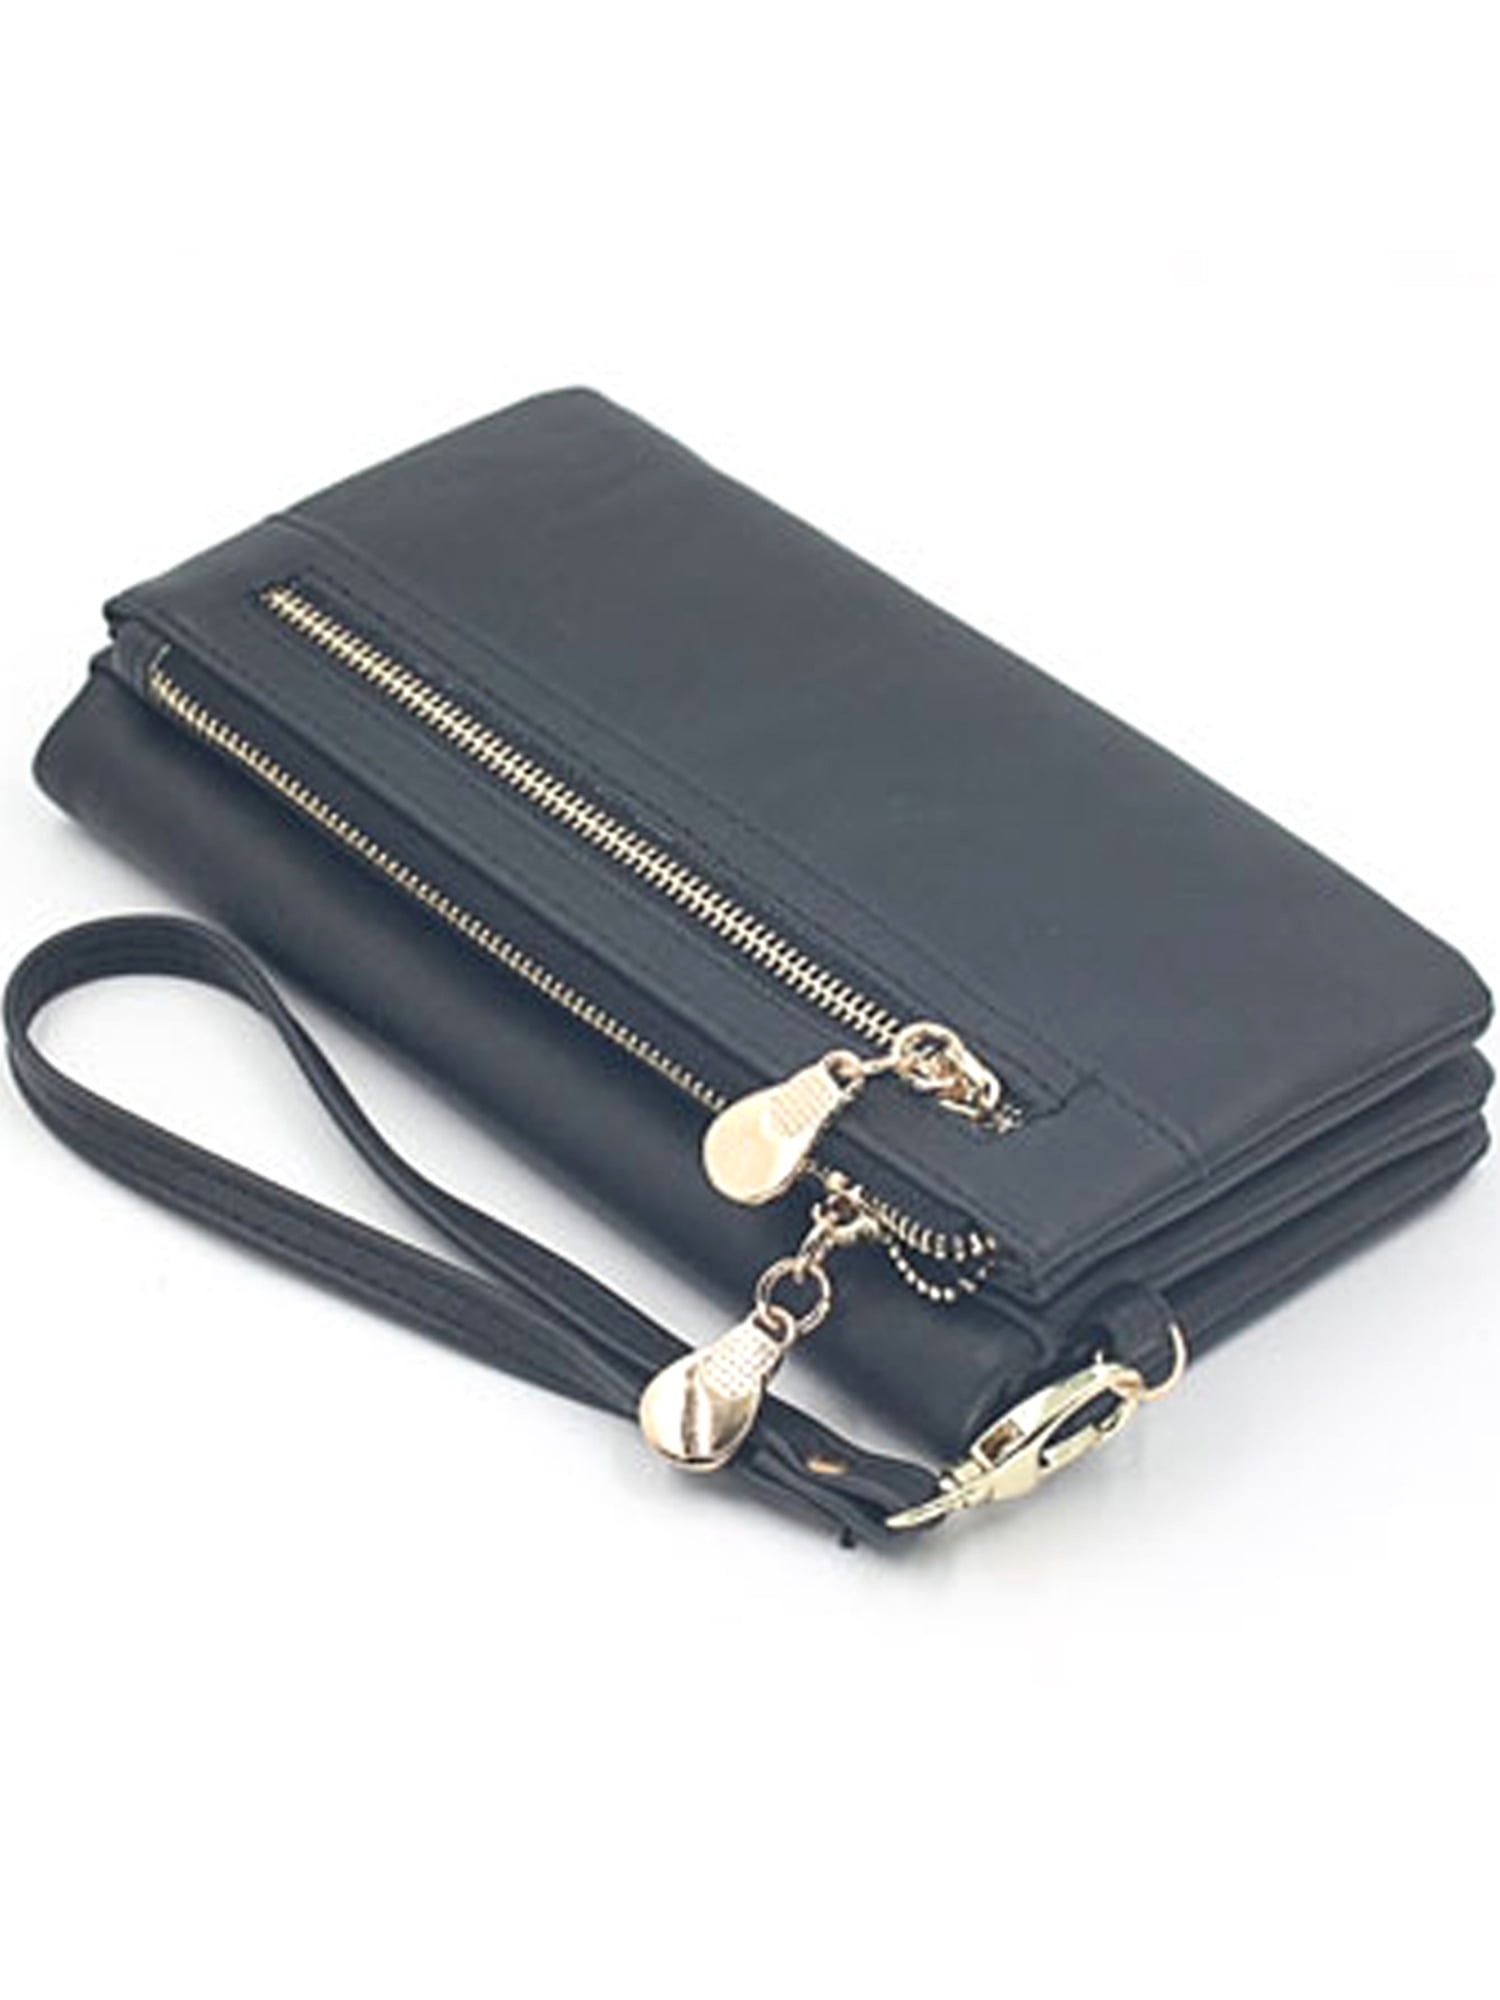 Lallc - Women Wallet Long Zip Purse Card Holder Phone Clutch Handbag Bag - www.bagssaleusa.com - www.bagssaleusa.com